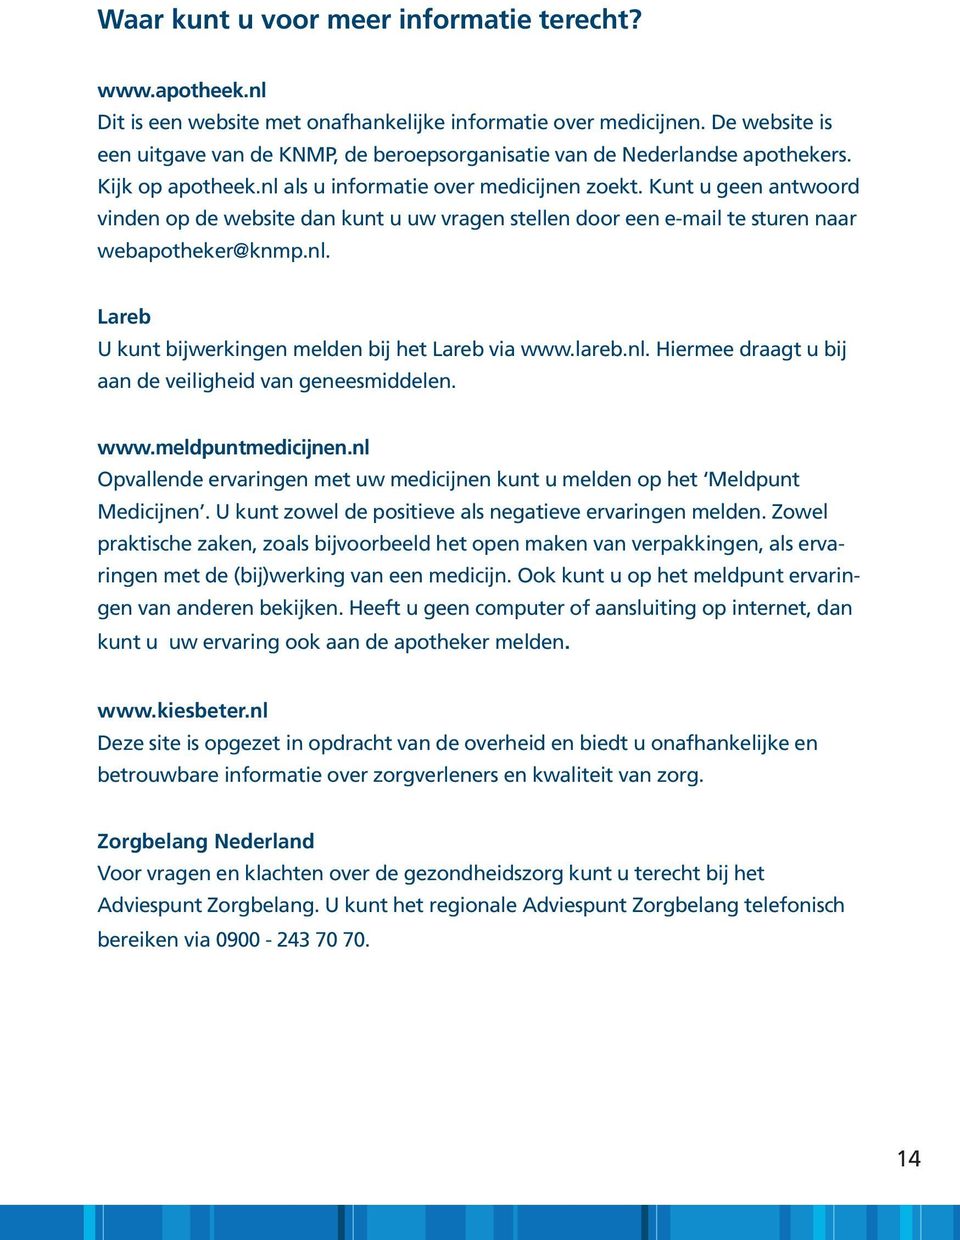 Kunt u geen antwoord vinden op de website dan kunt u uw vragen stellen door een e-mail te sturen naar webapotheker@knmp.nl. Lareb U kunt bijwerkingen melden bij het Lareb via www.lareb.nl. Hiermee draagt u bij aan de veiligheid van geneesmiddelen.